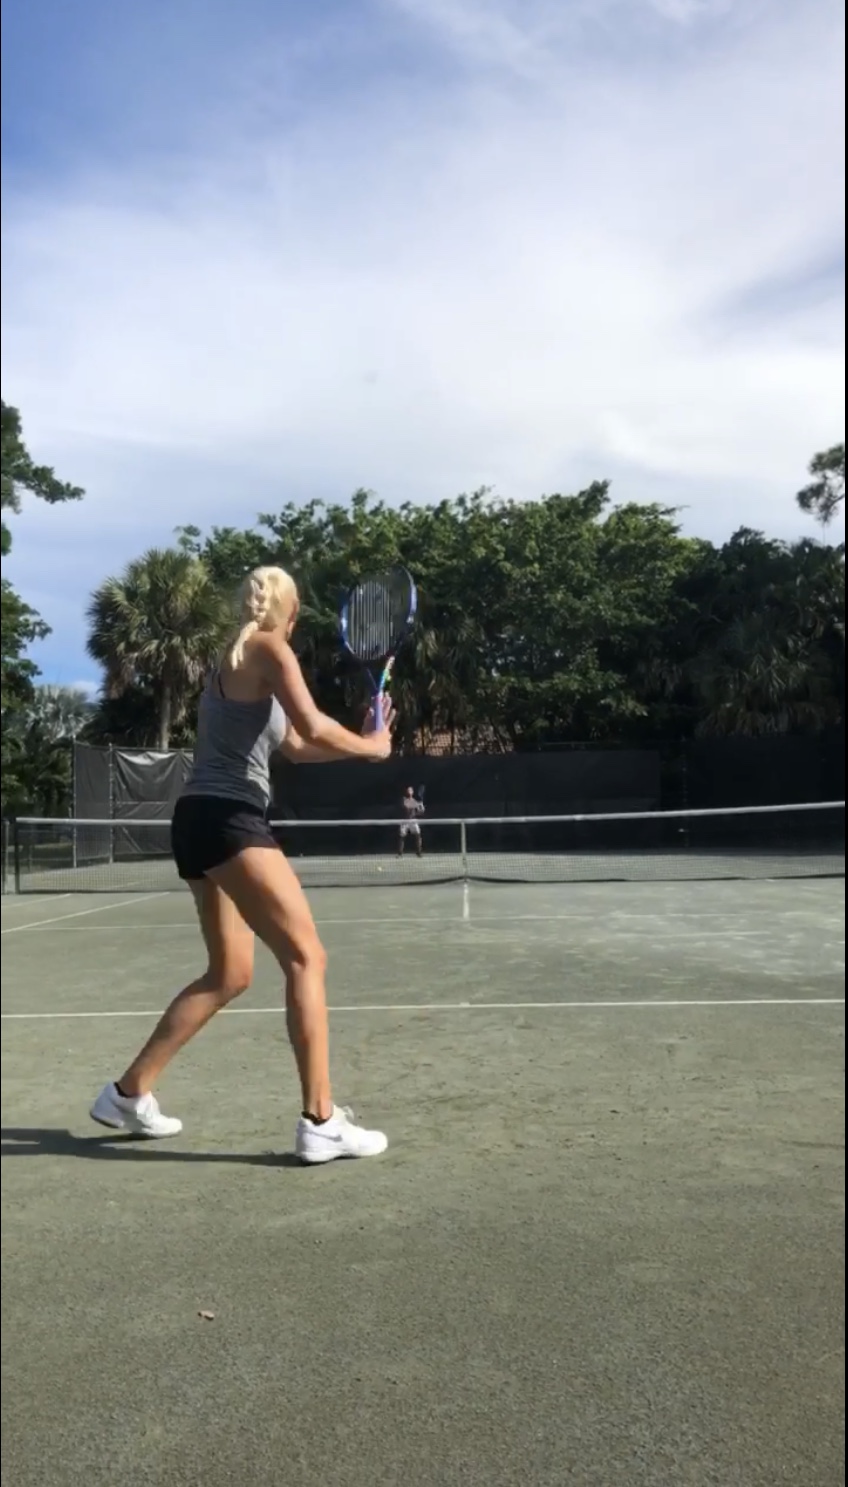 Ashley D. teaches tennis lessons in Miami, FL